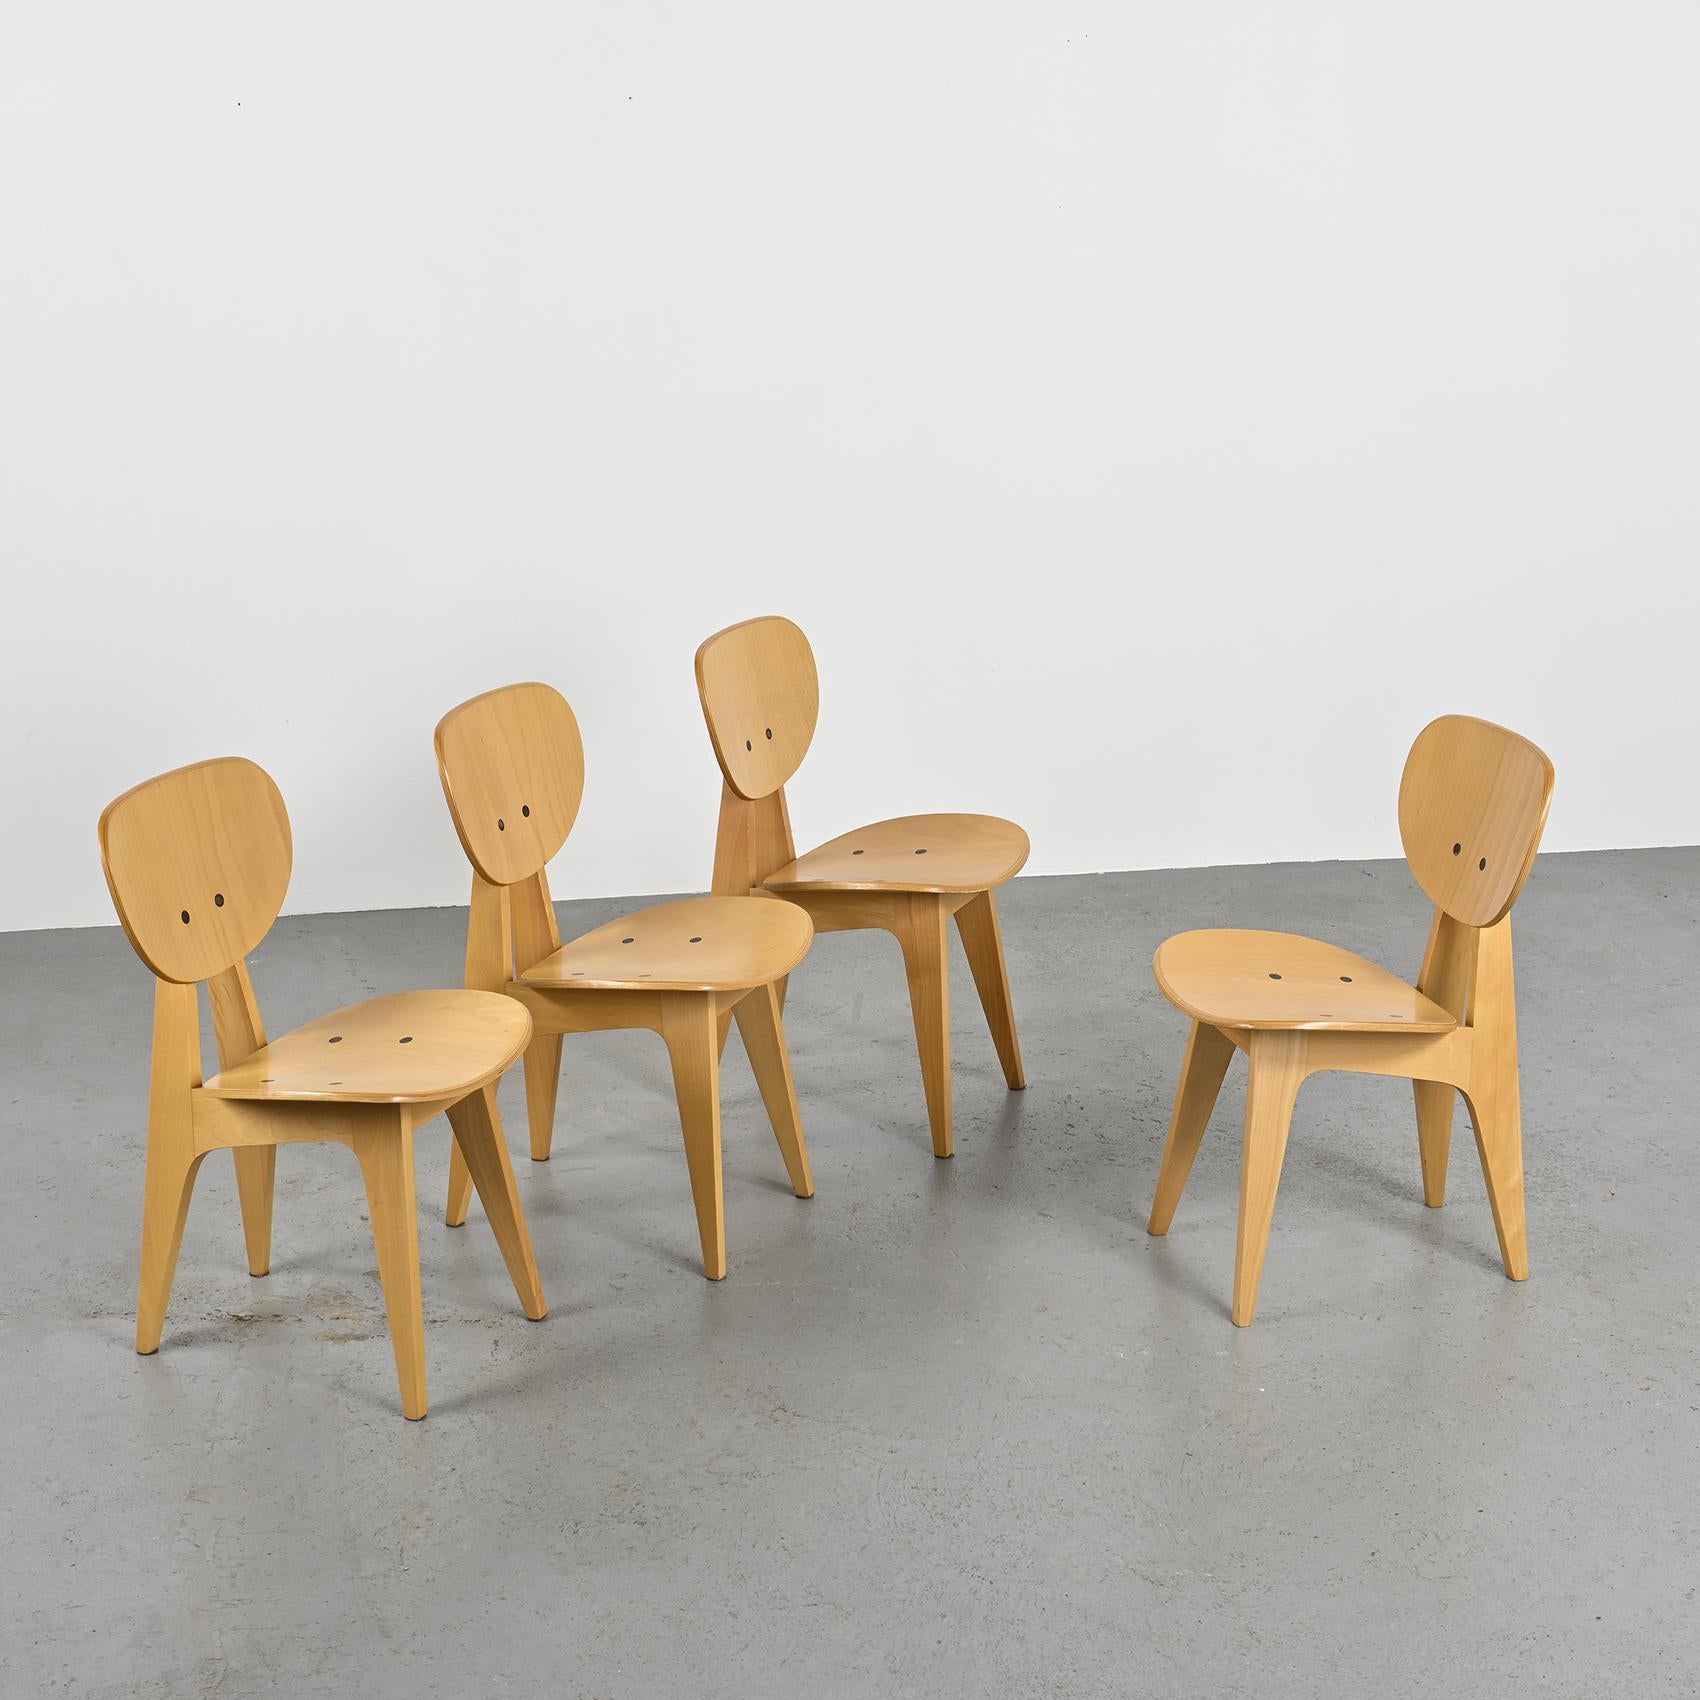 Conjunto de cuatro sillas, modelo 3221, ideadas en la década de 1950 por el diseñador y arquitecto japonés Junzo Sakakura, conocido por su colaboración con Le Corbusier. Estas sillas destilan la sofisticación y el ingenio funcional inherentes a